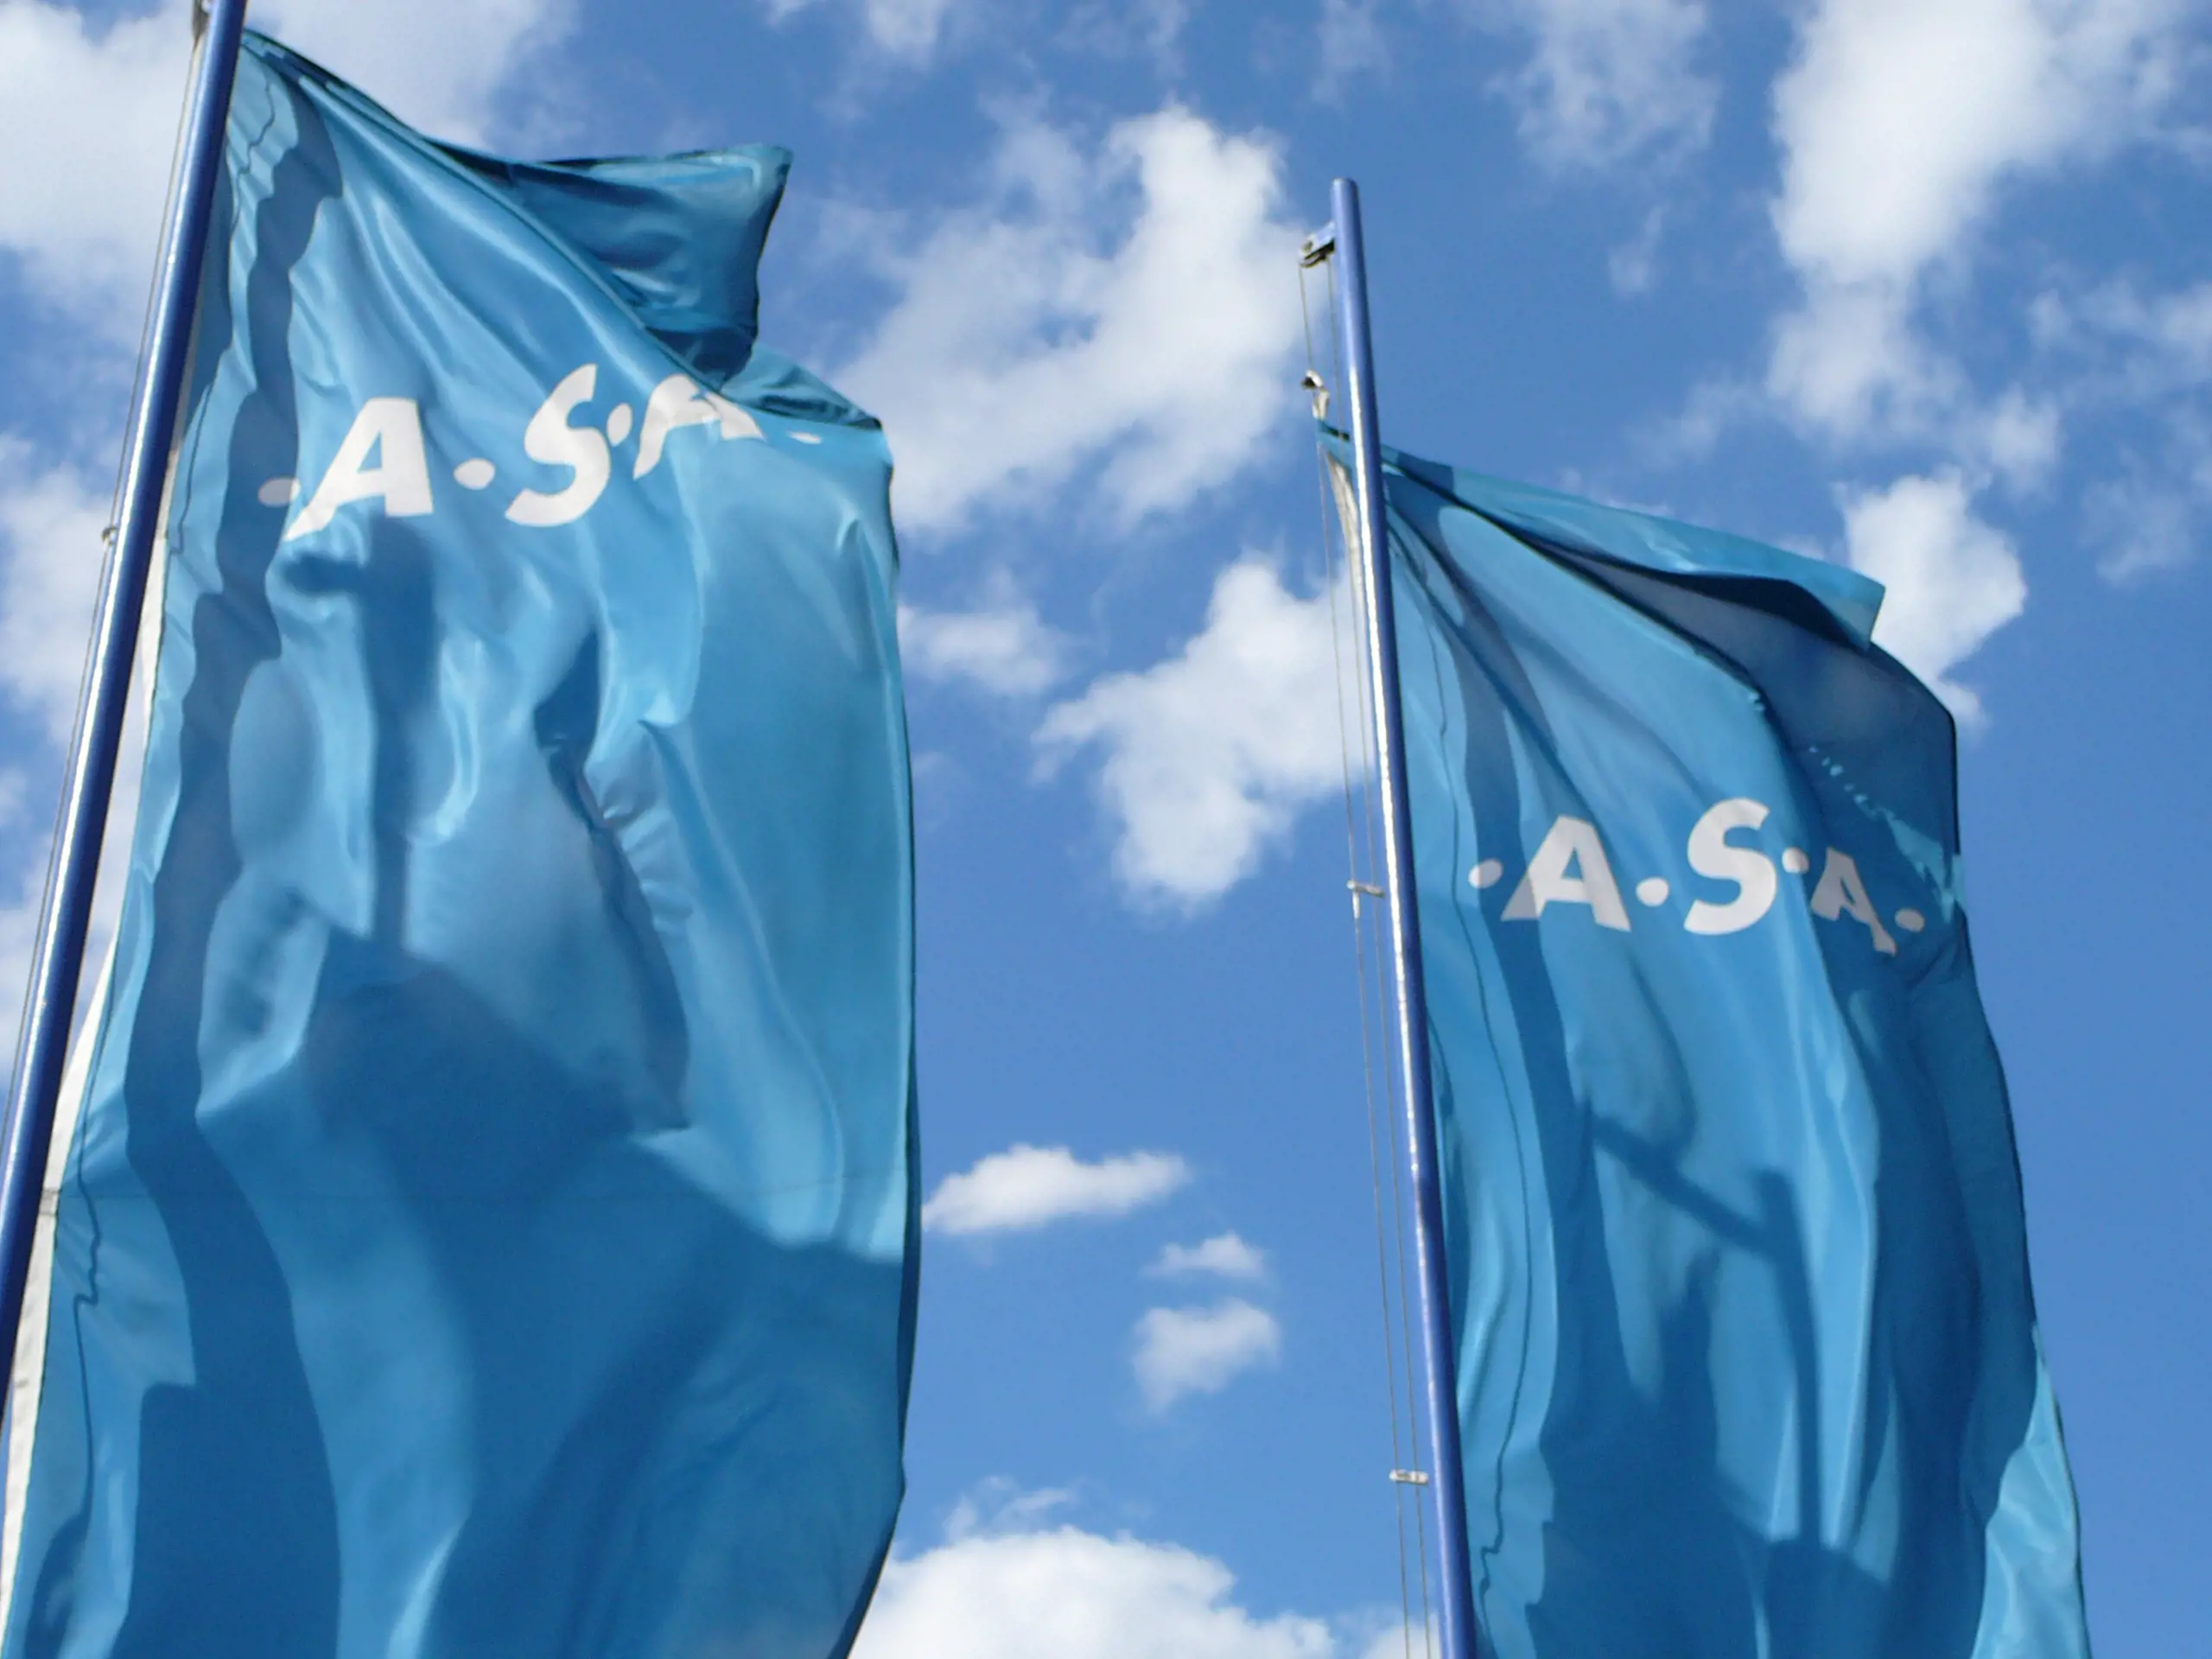 .A.S.A. obhájila svou pozici jedničky na trhu odpadového hospodářství